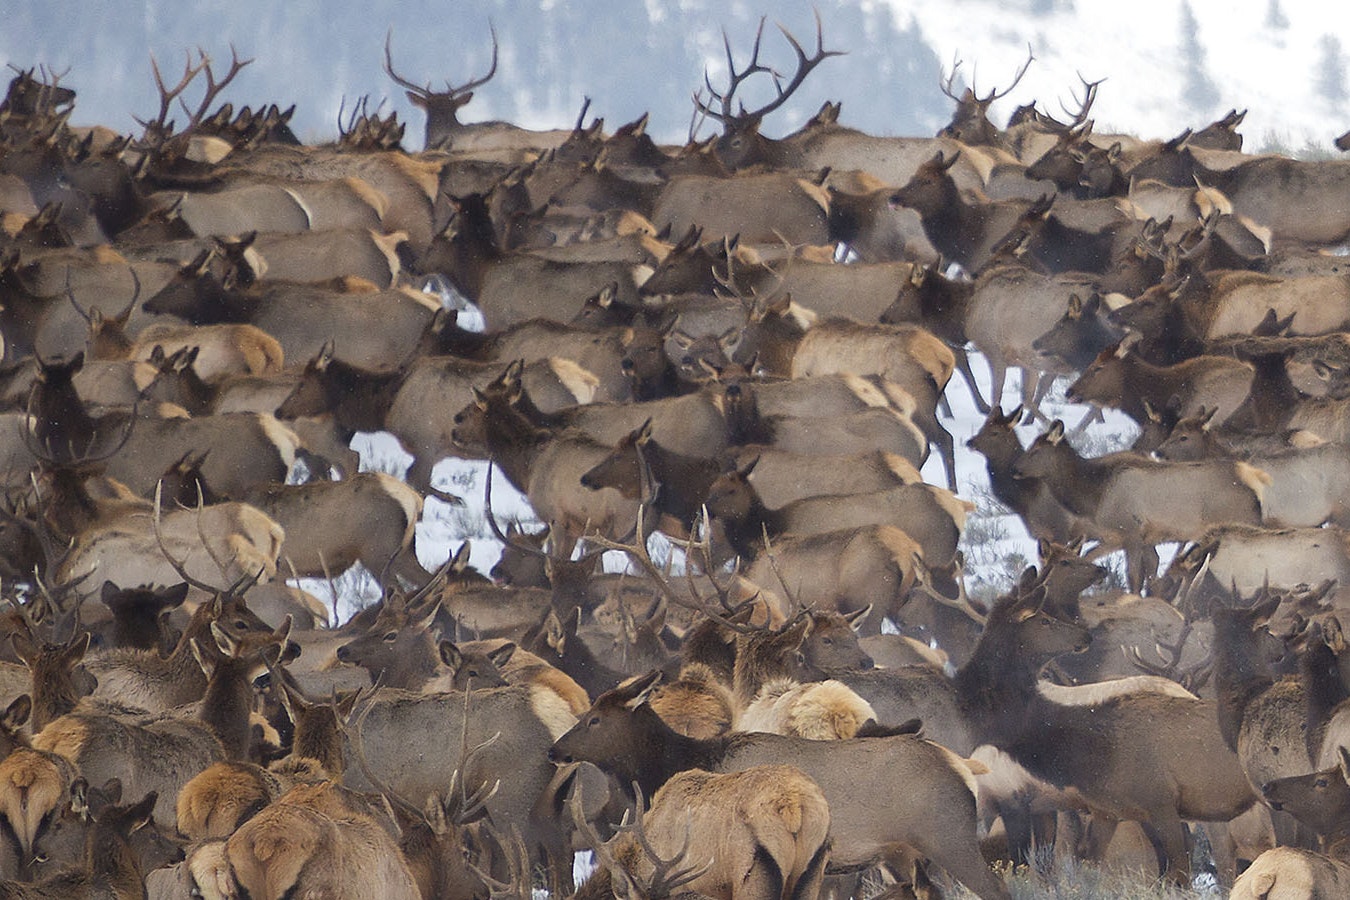 A large herd of elk in Wyoming.